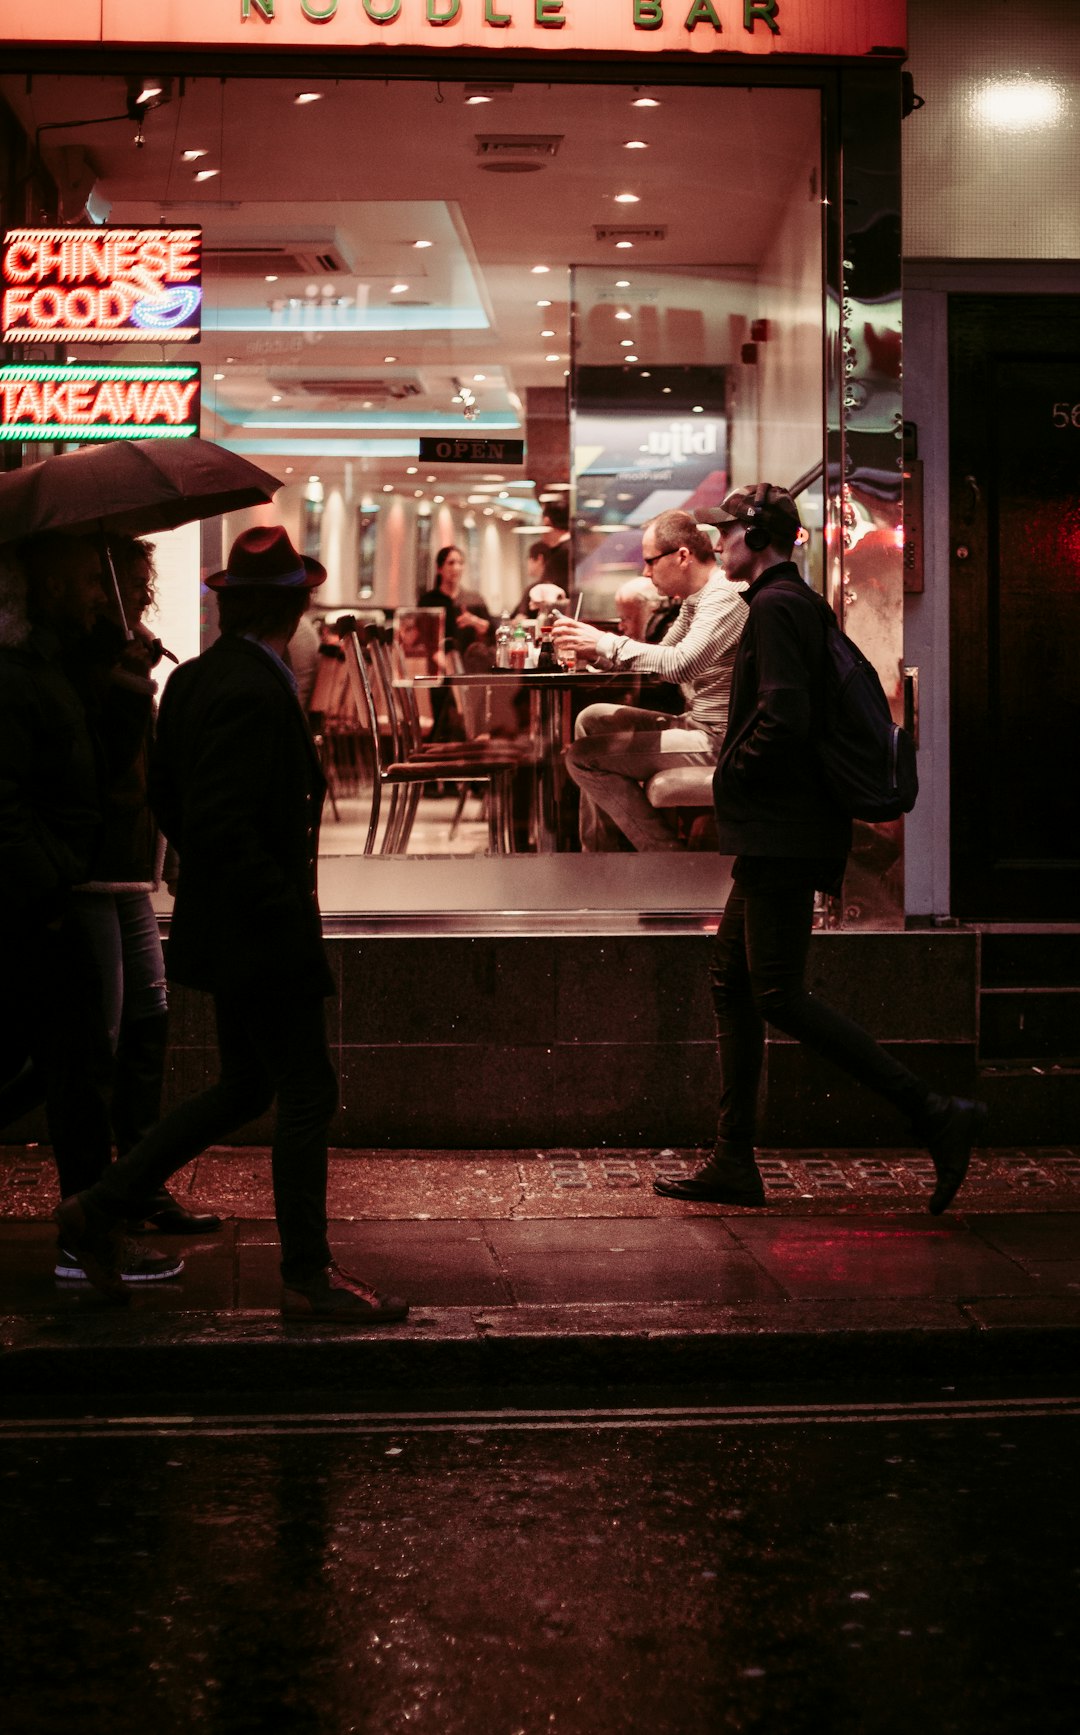 man walking near restaurant wearing jacket